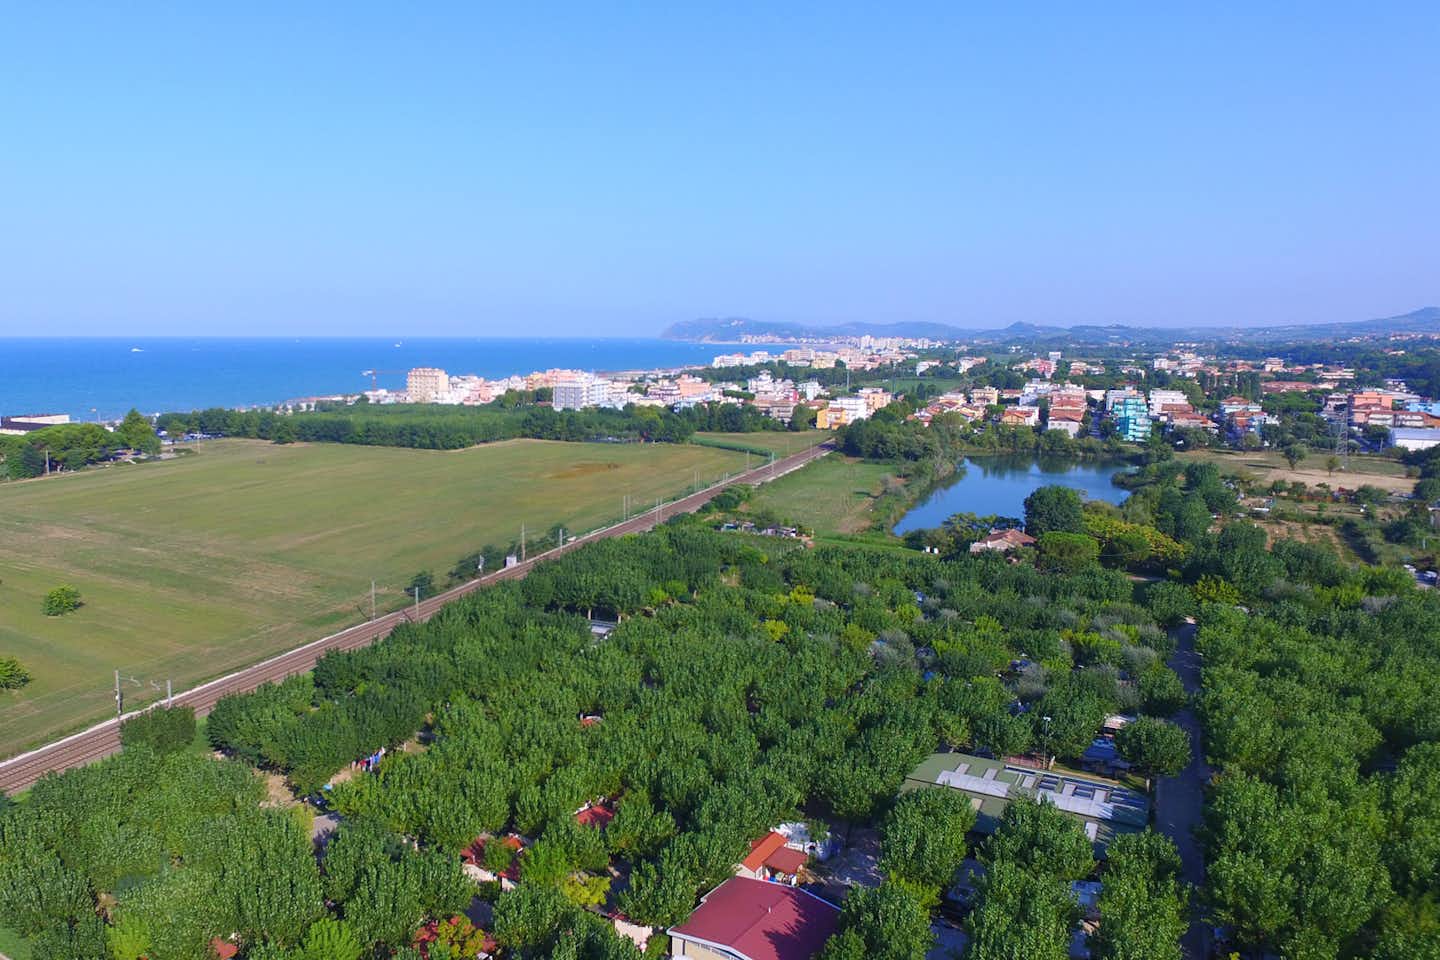 Camping Riccione - Luftaufnahme auf den Campingplatz im Vordergrund, mit nahen Ortschaften und dem Mittelmeer im Hintergrund